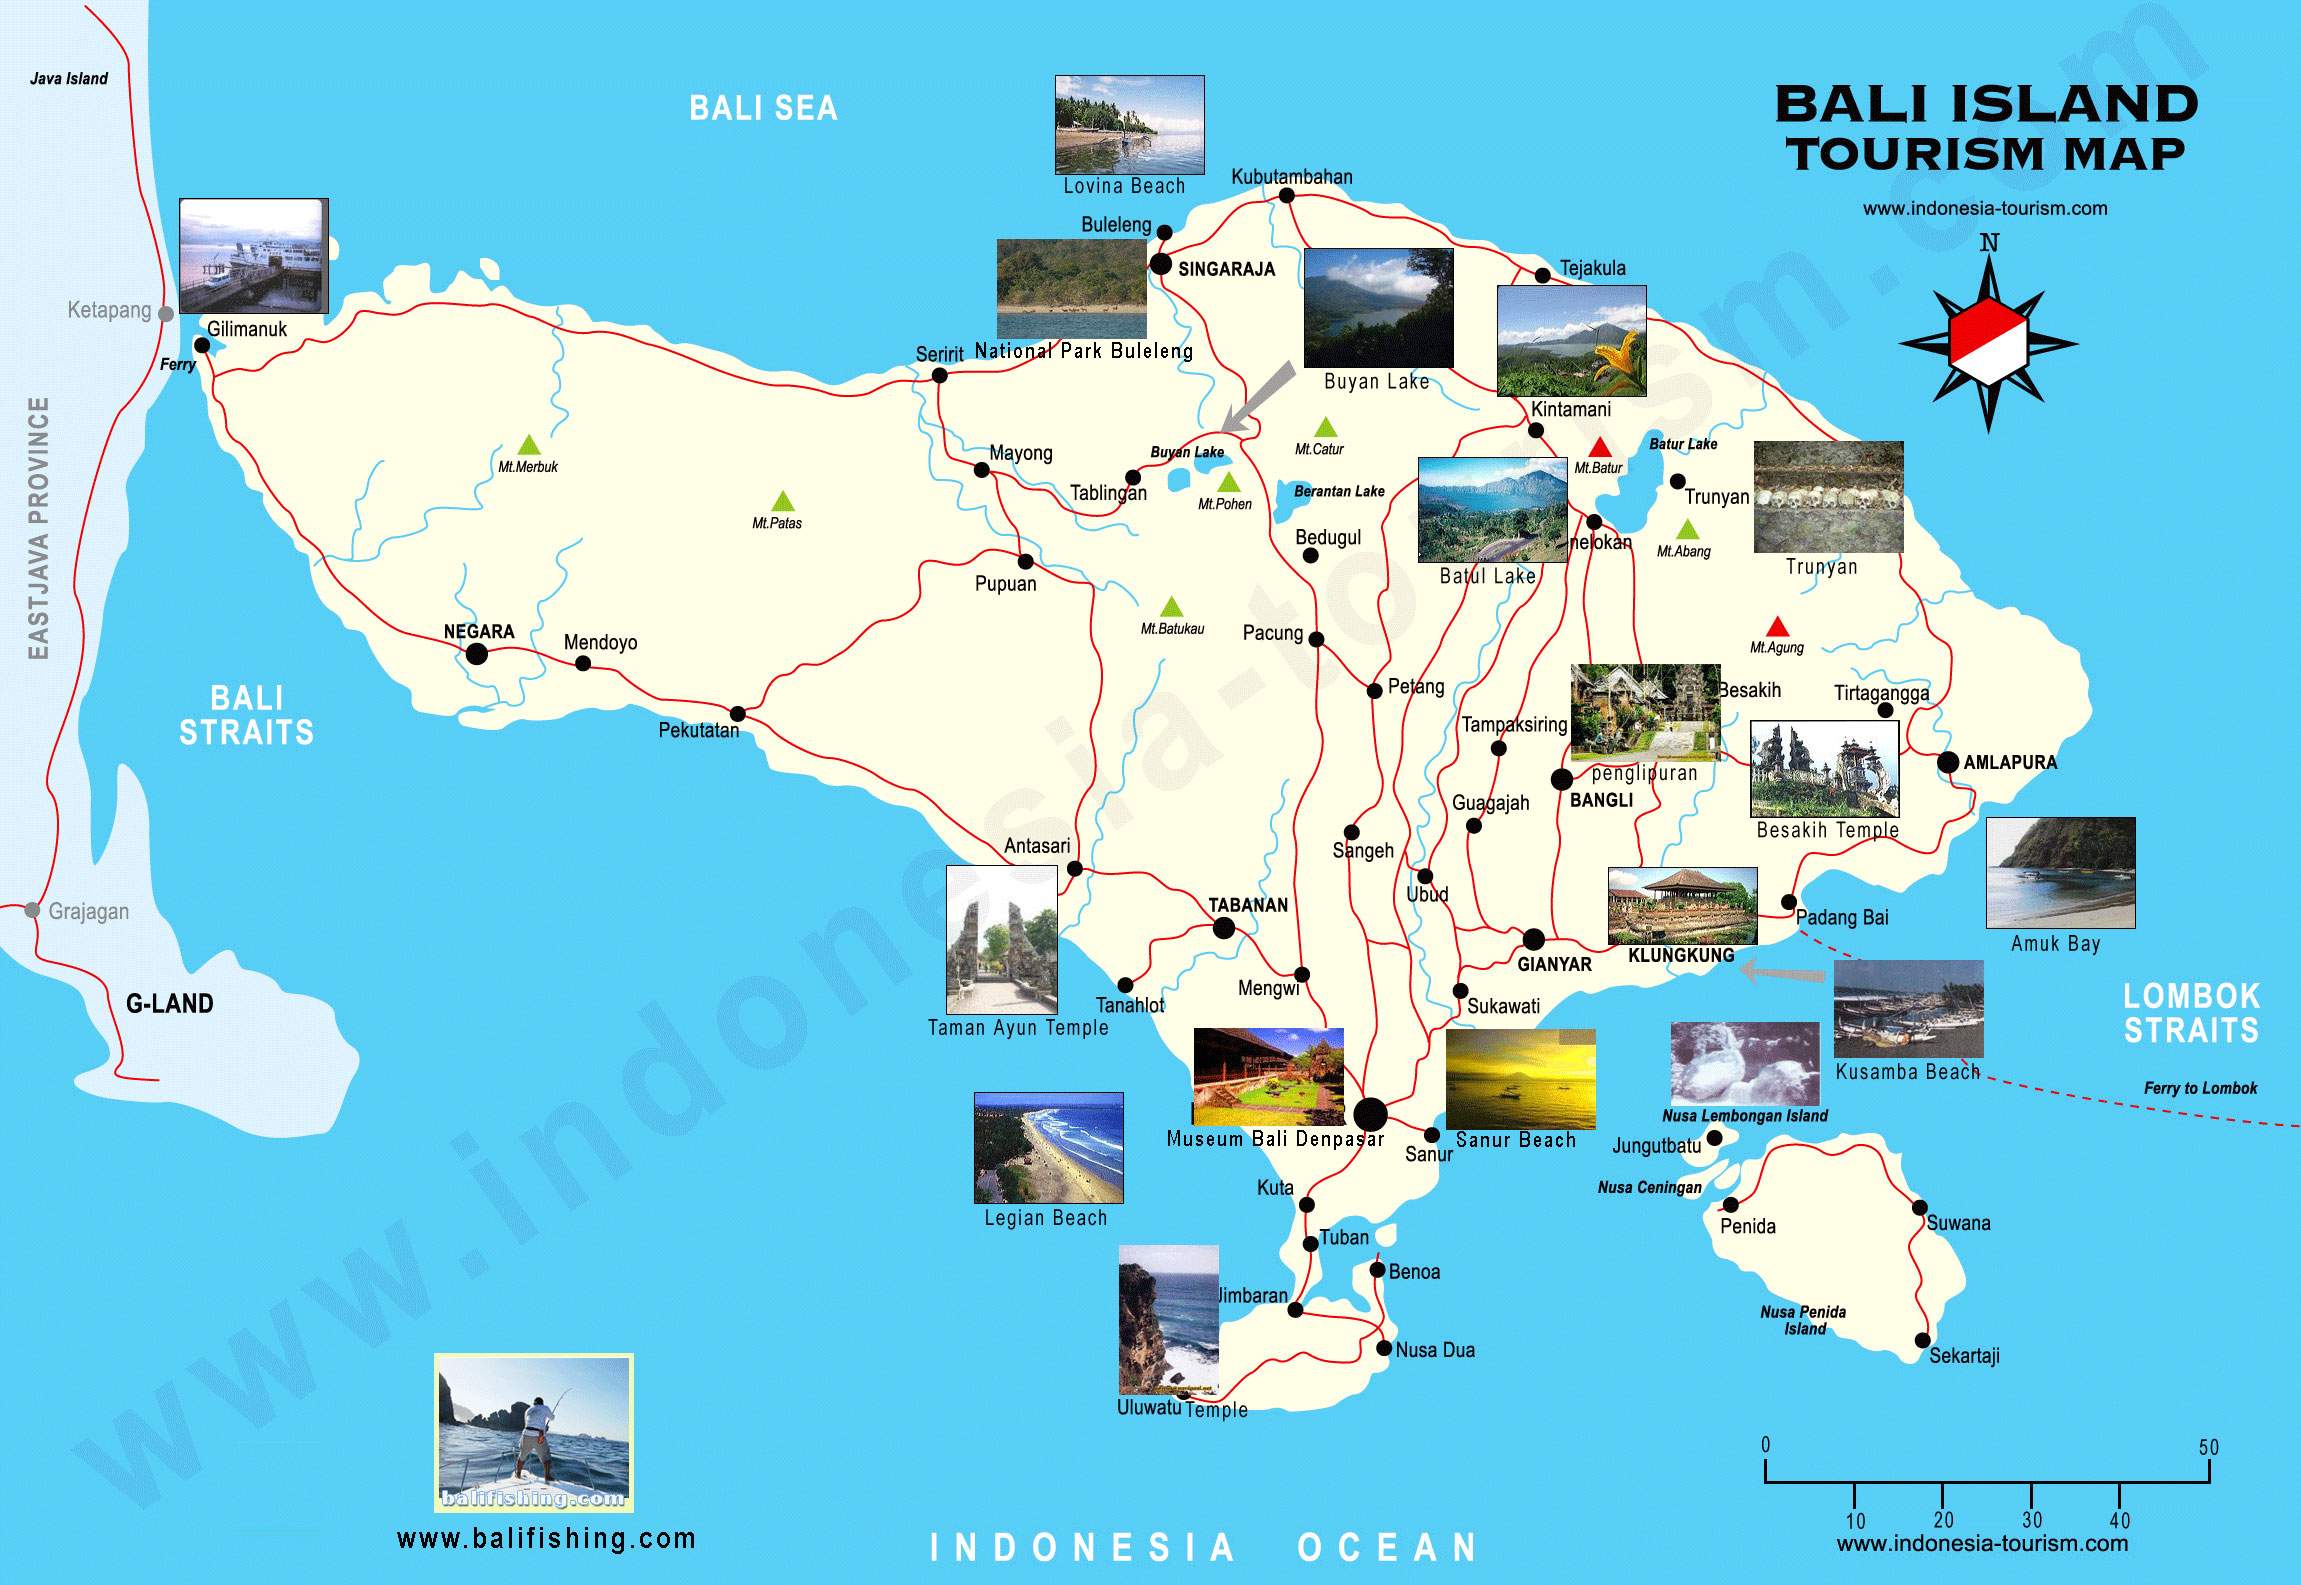 Mapas Detallados de Bali para Descargar Gratis e Imprimir